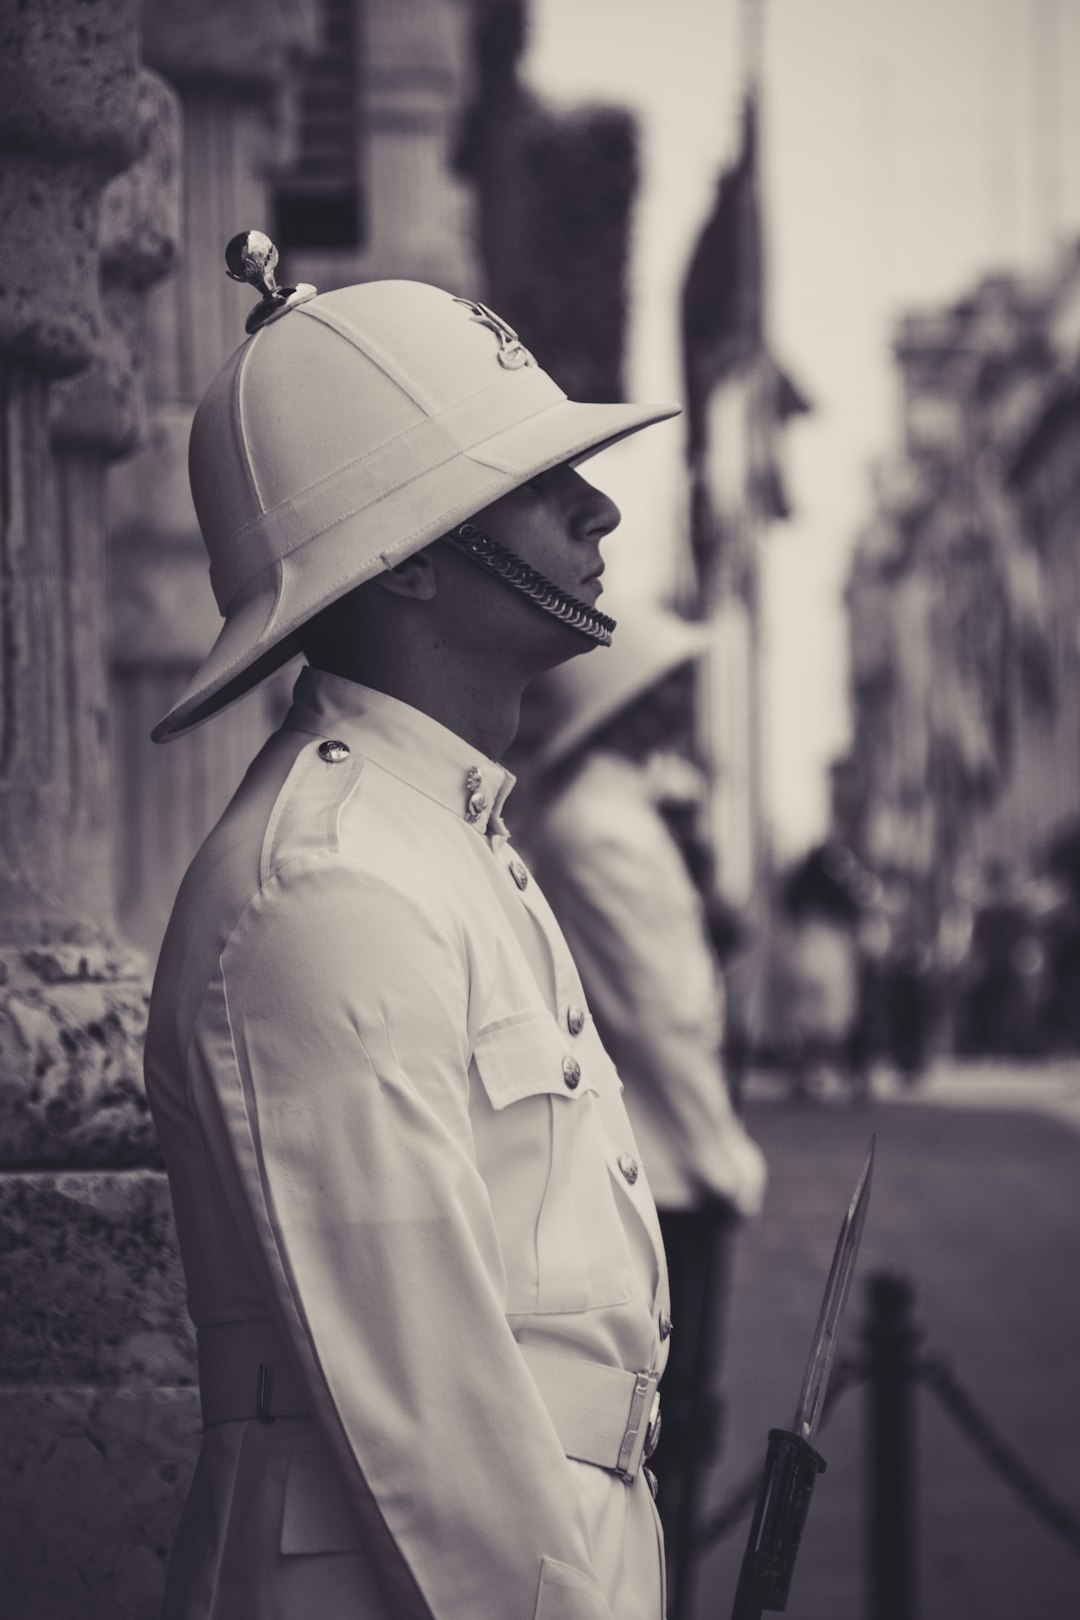 A guard in Malta